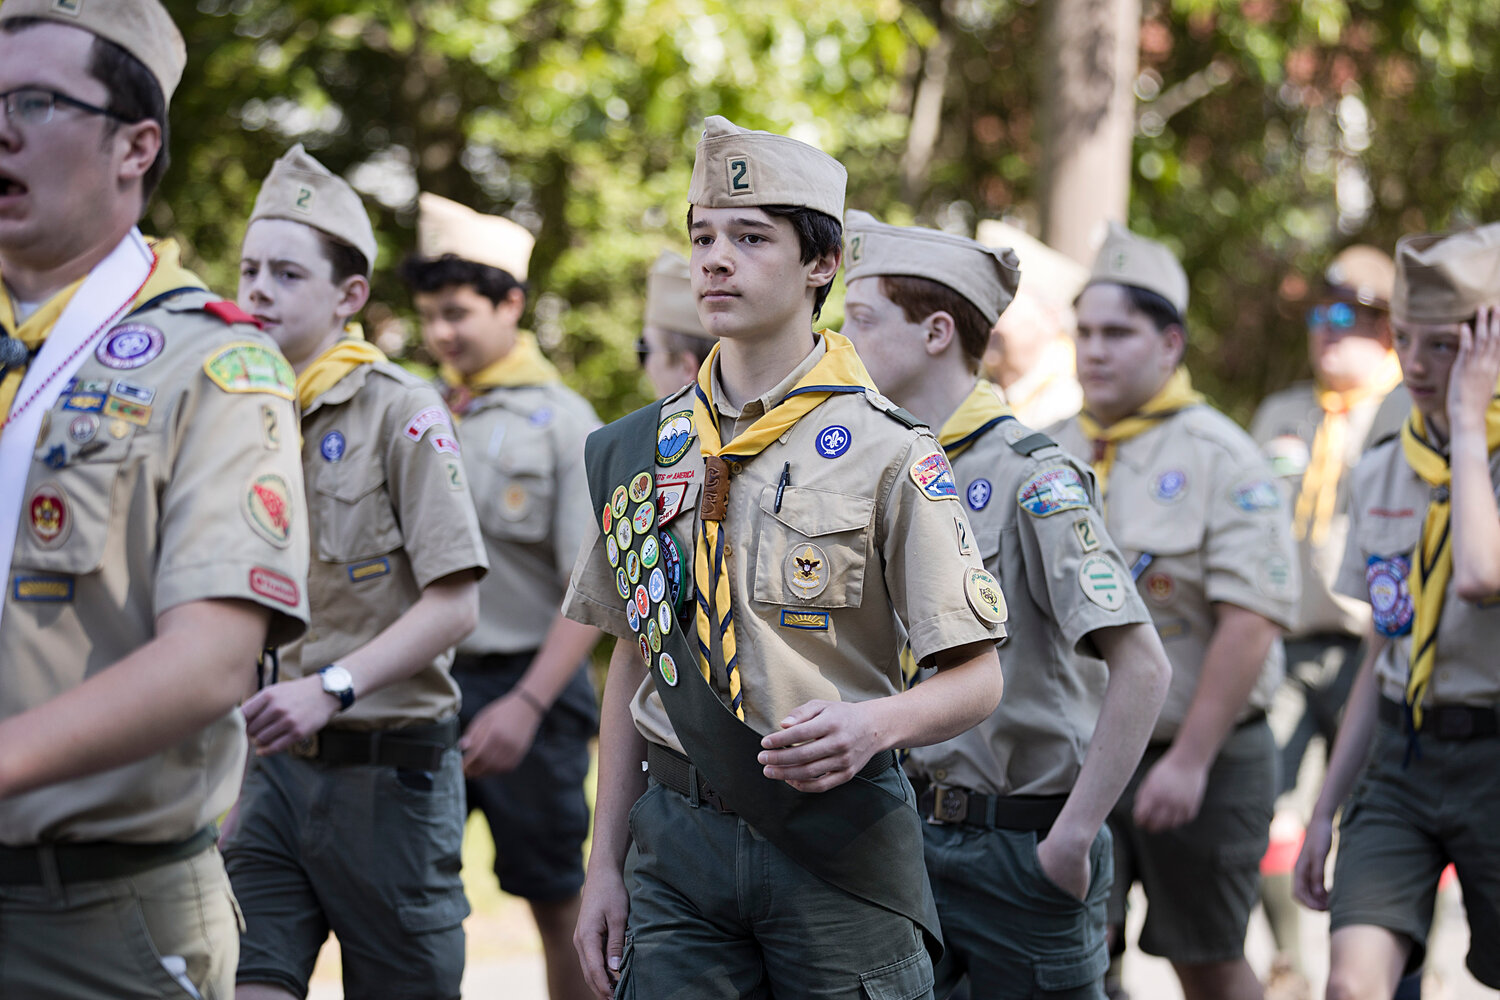 Members of Barrington Boy Scout's Troop 2.